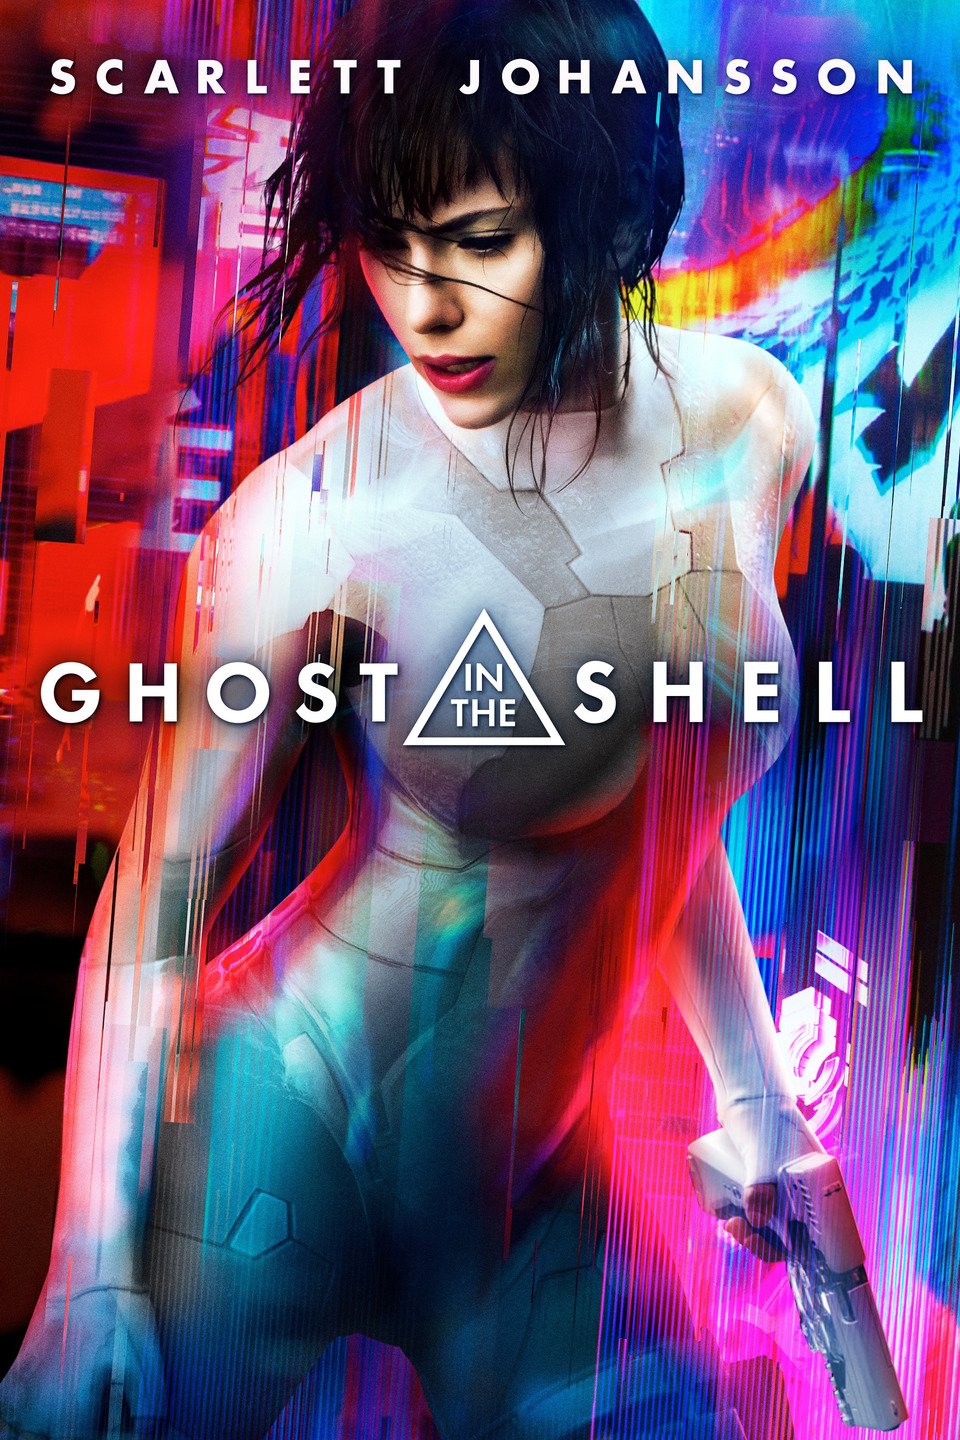 [MINI-HD HQ] Ghost in the Shell (2017) โกสต์อินเดอะเชลล์ [Master] [1080P] [BrRip.DTS.x264] [พากย์ไทย 5.1 + อังกฤษ DTS] [ซับไทย + อังกฤษ] [ONE2UP]